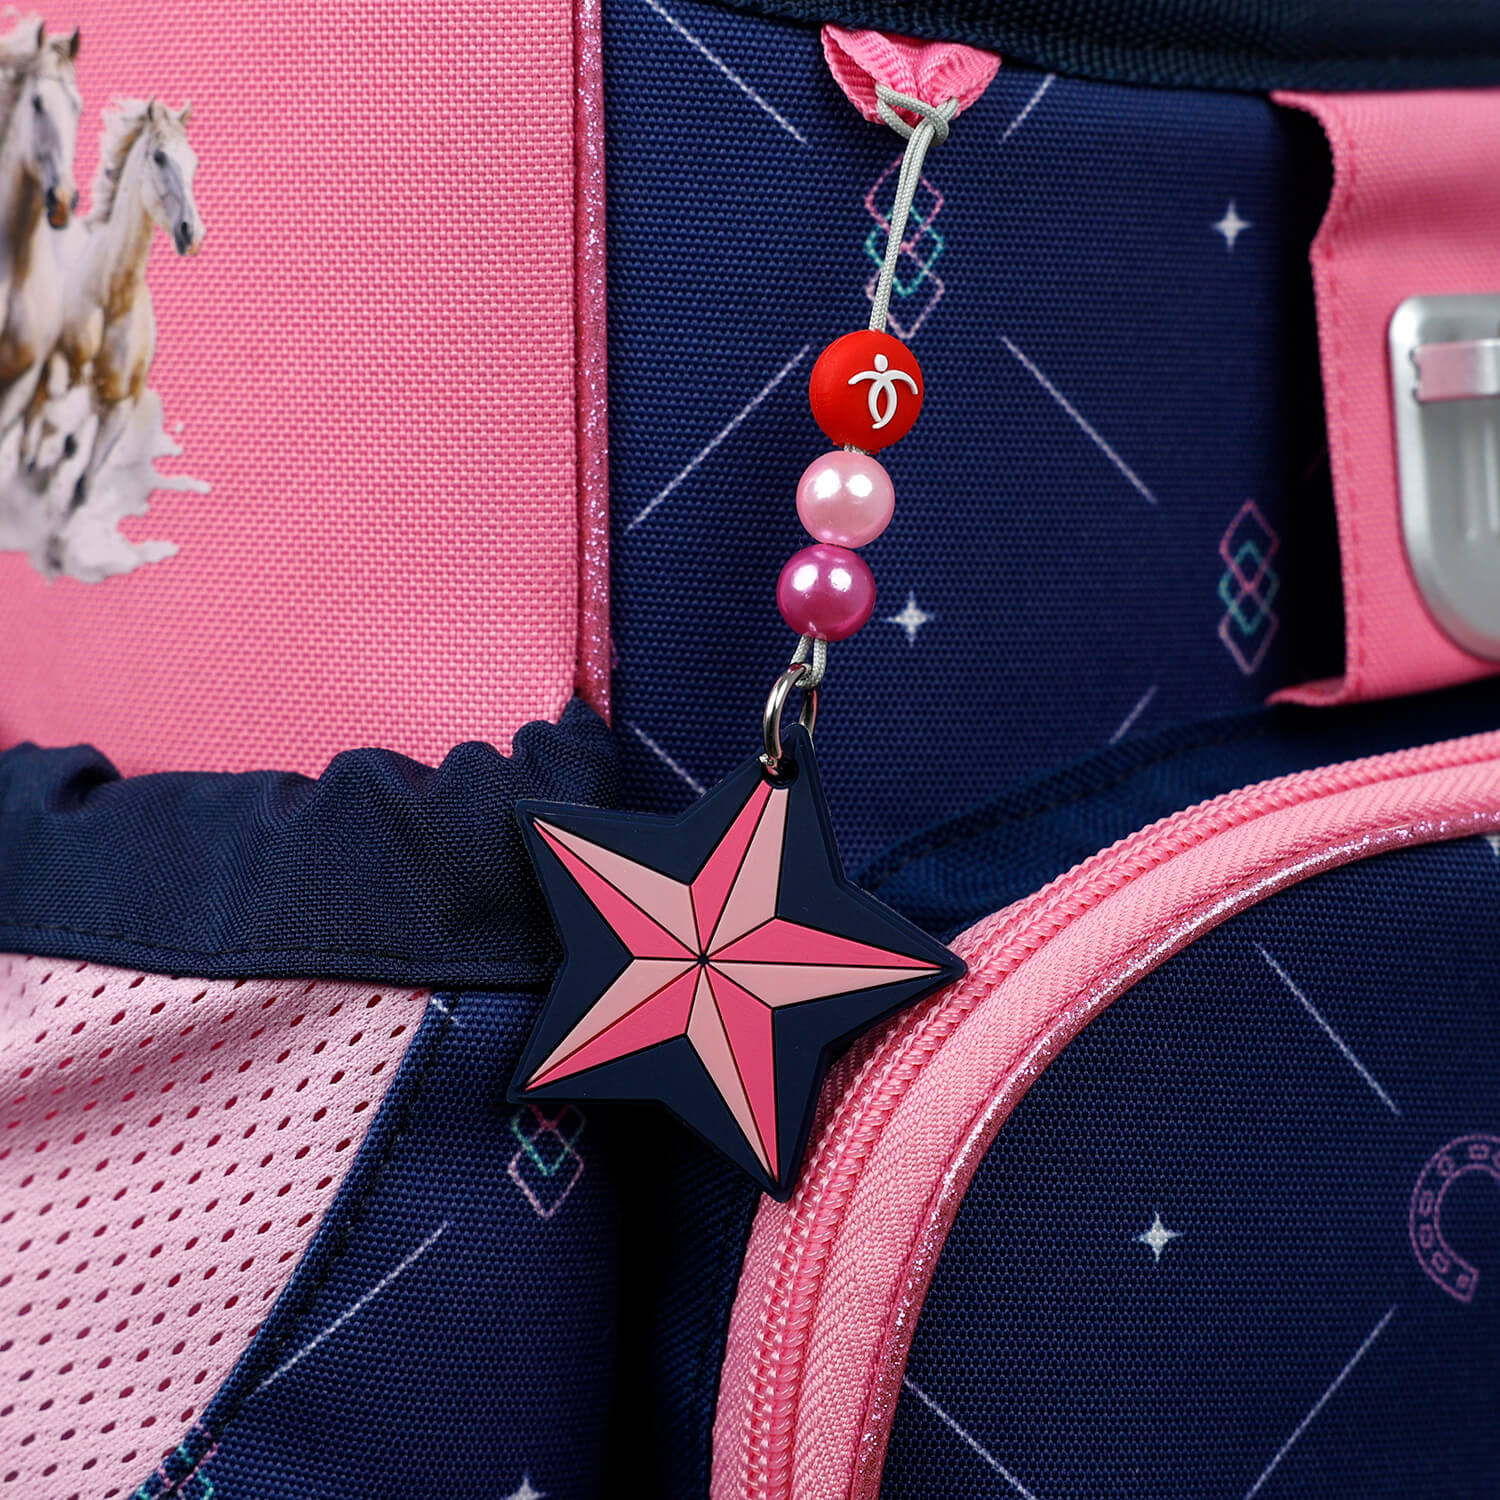 Schlüsselhalter Navy Blue and Pink Star